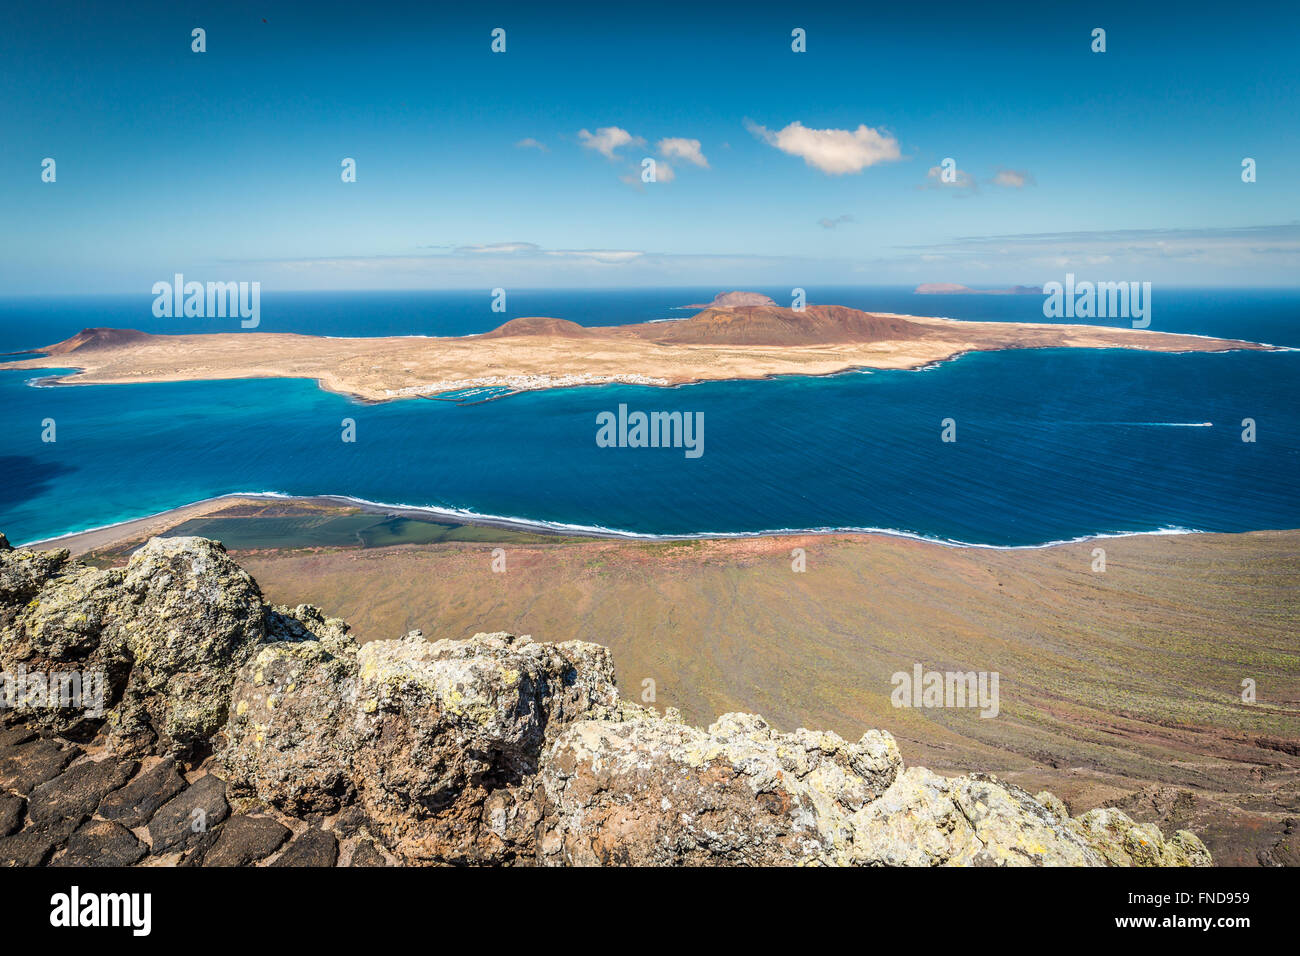 Mirador del Rio in Lanzarote, Canary Islands, Spain Stock Photo